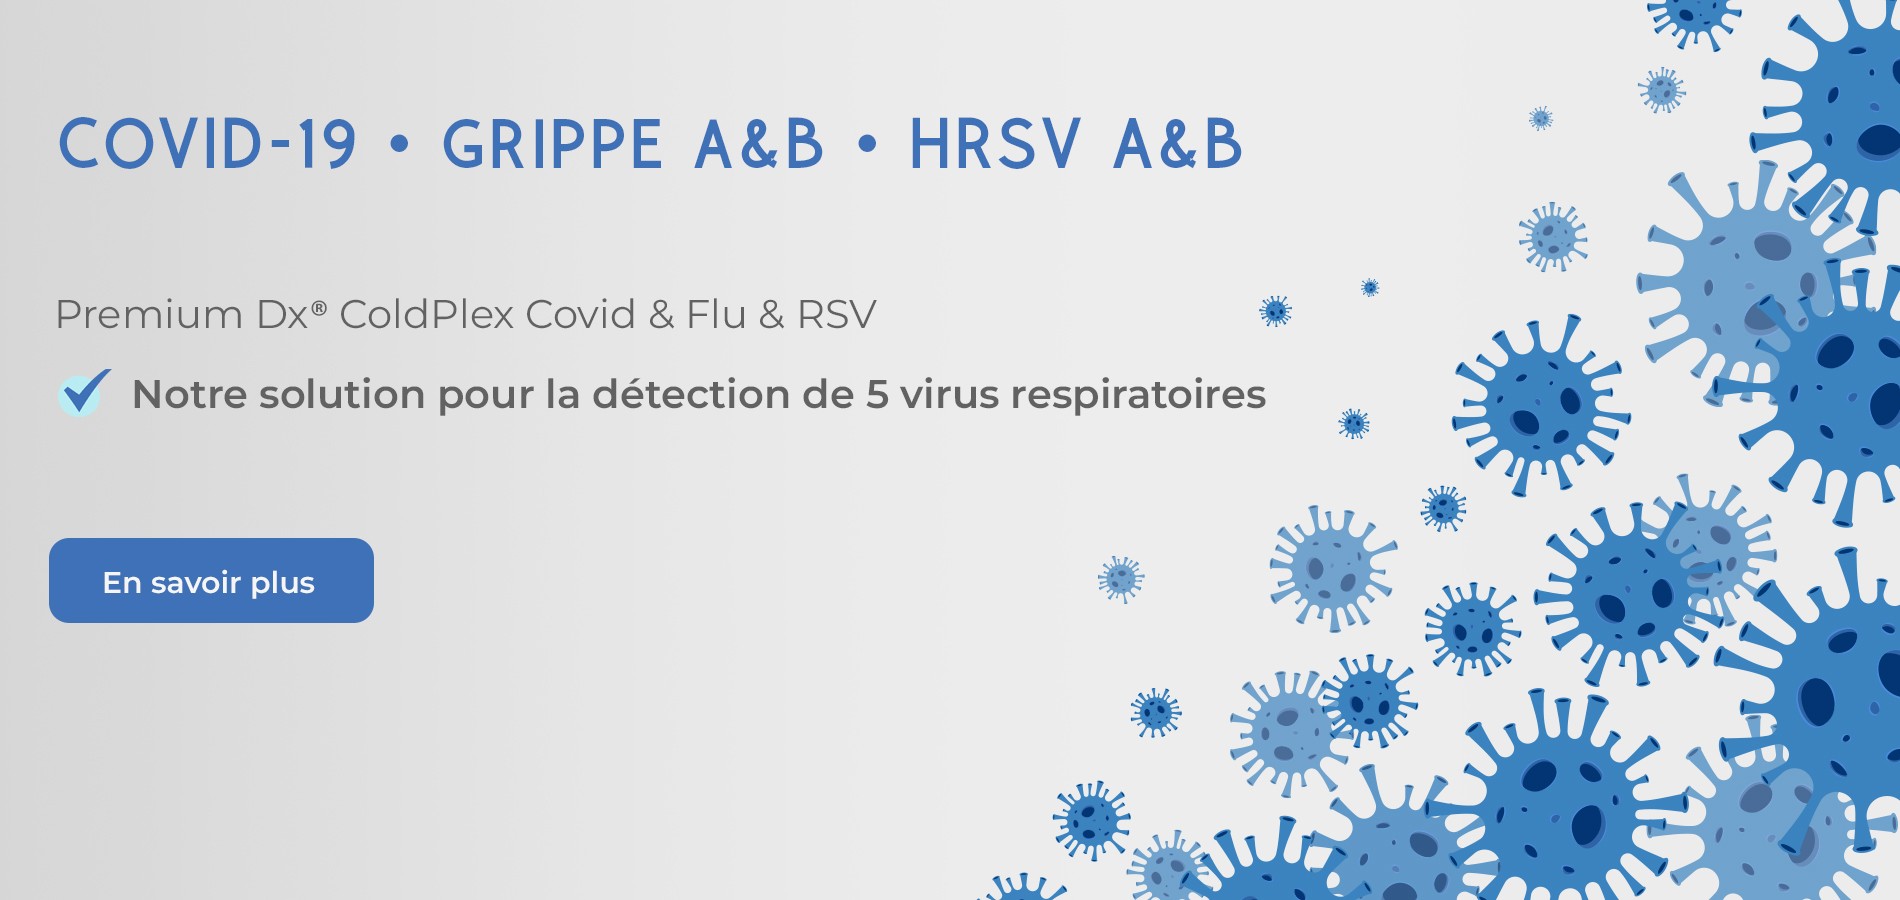 Notre solution pour la détection de 5 virus respiratoires